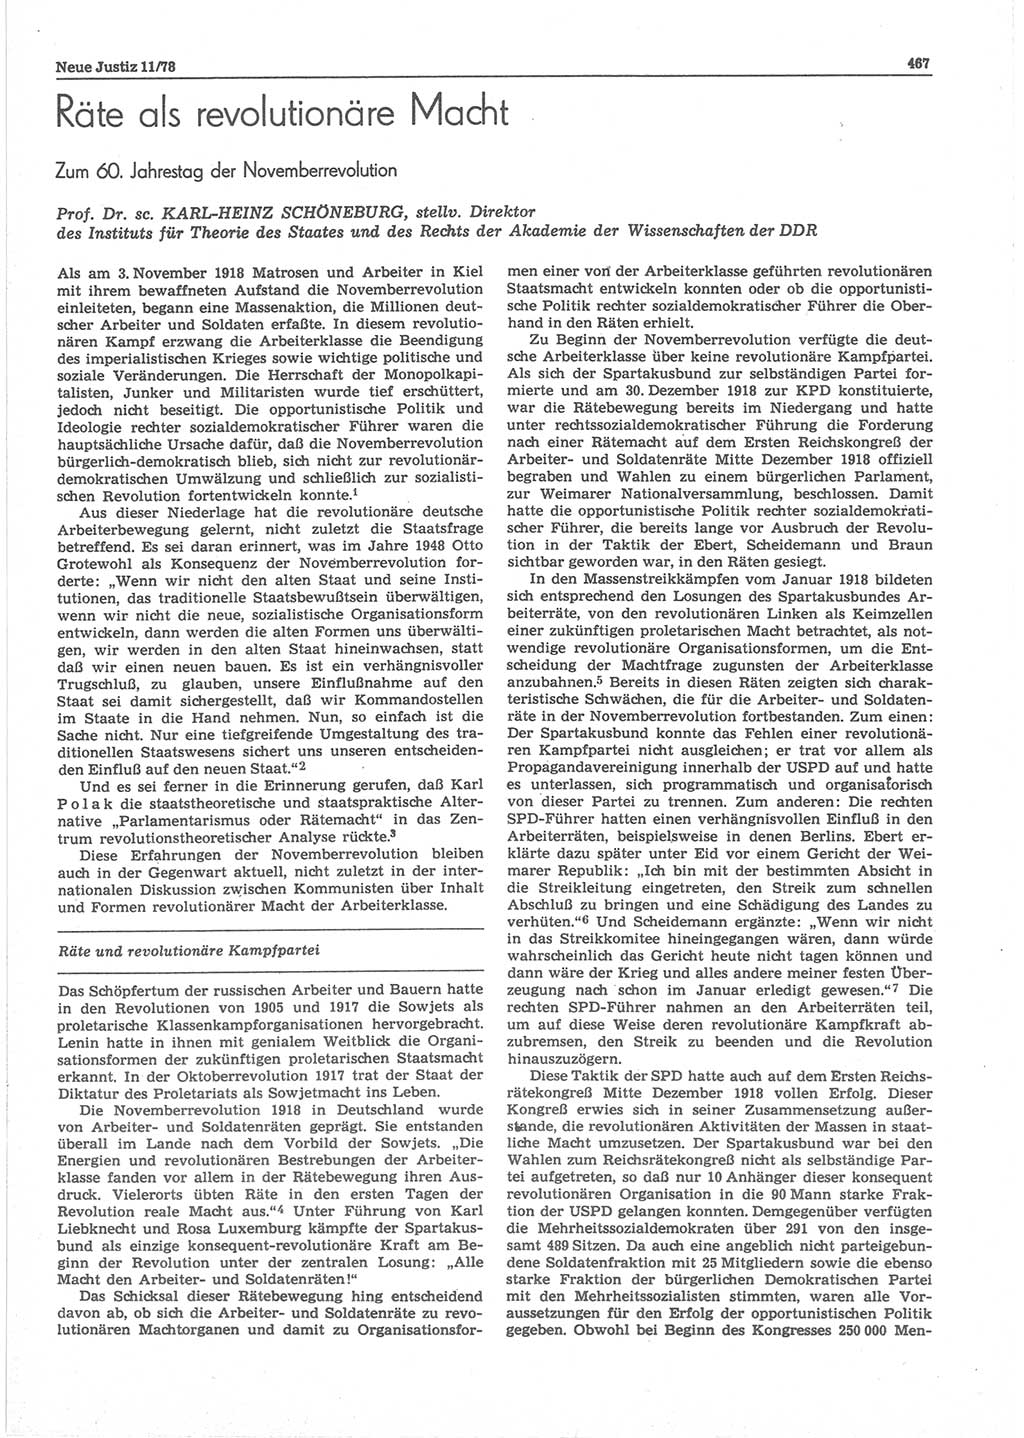 Neue Justiz (NJ), Zeitschrift für sozialistisches Recht und Gesetzlichkeit [Deutsche Demokratische Republik (DDR)], 32. Jahrgang 1978, Seite 467 (NJ DDR 1978, S. 467)